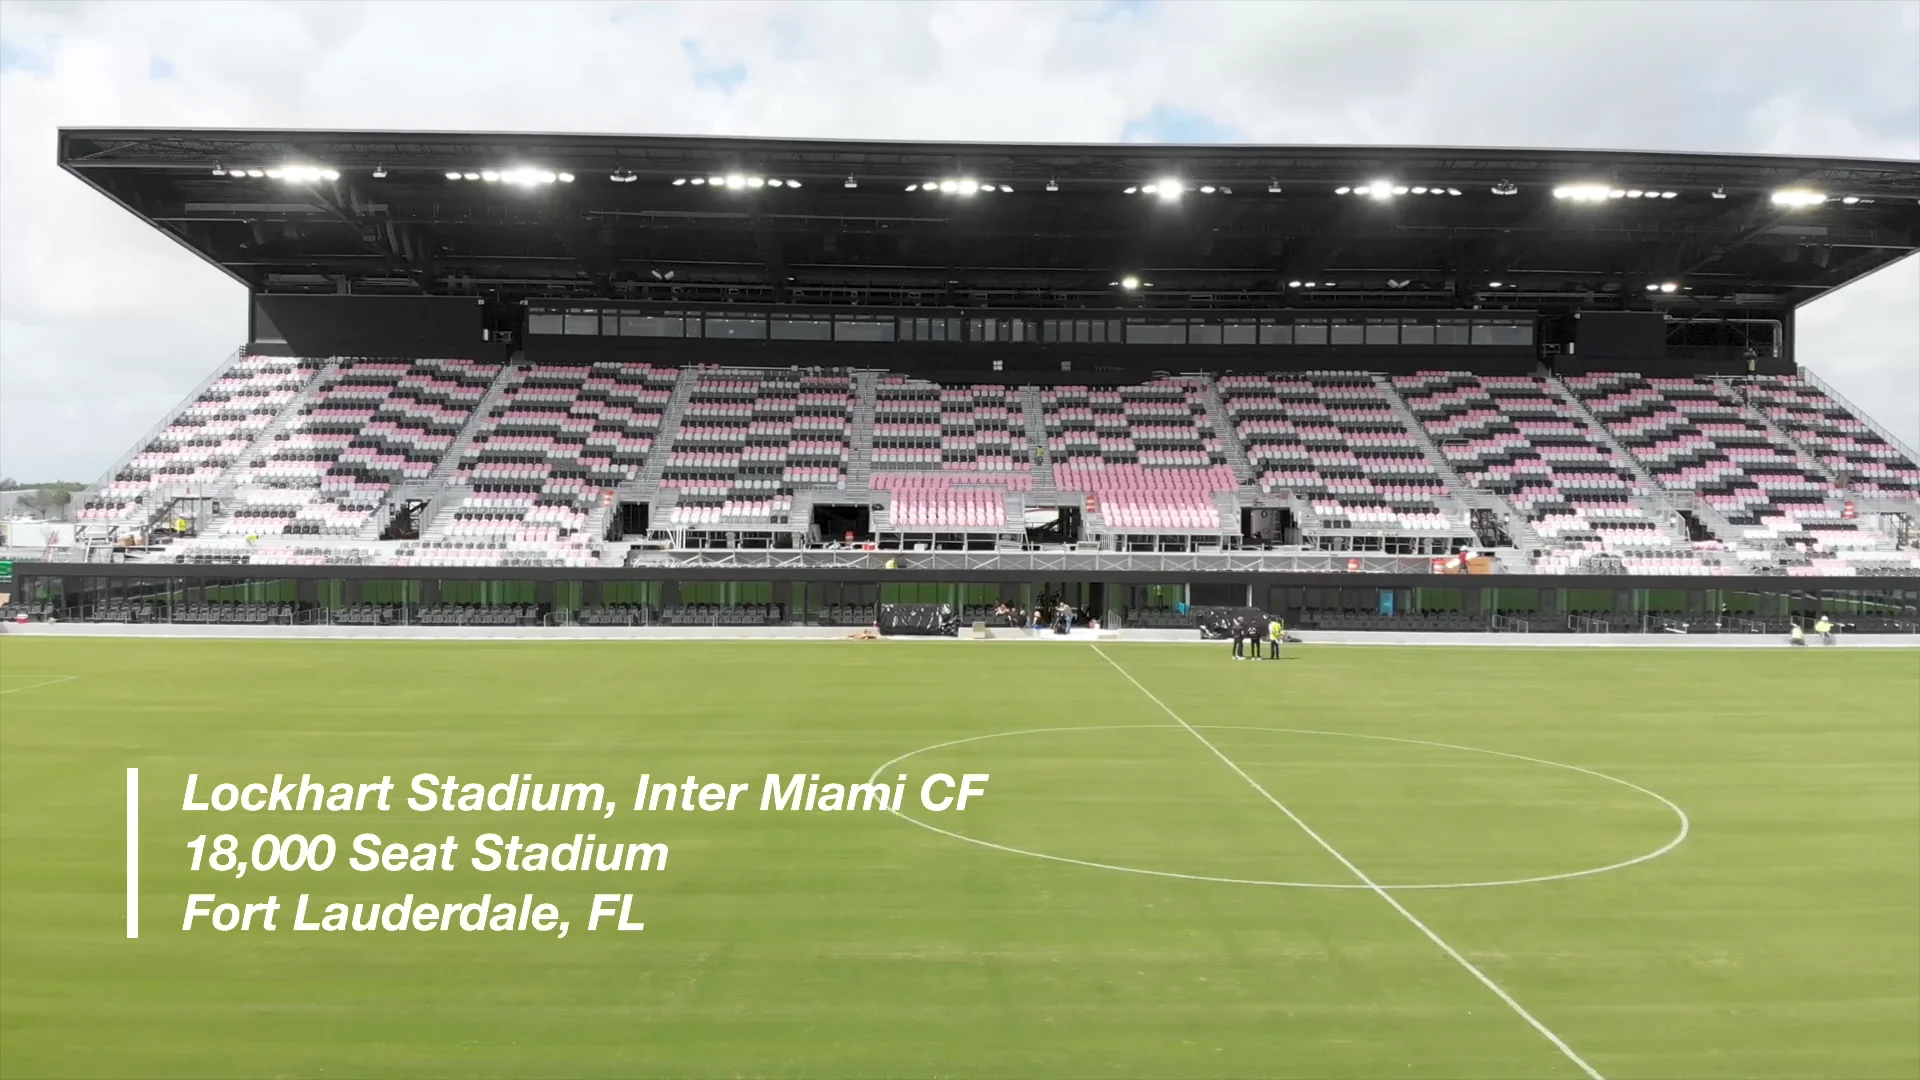 The Inter Miami CF Stadium